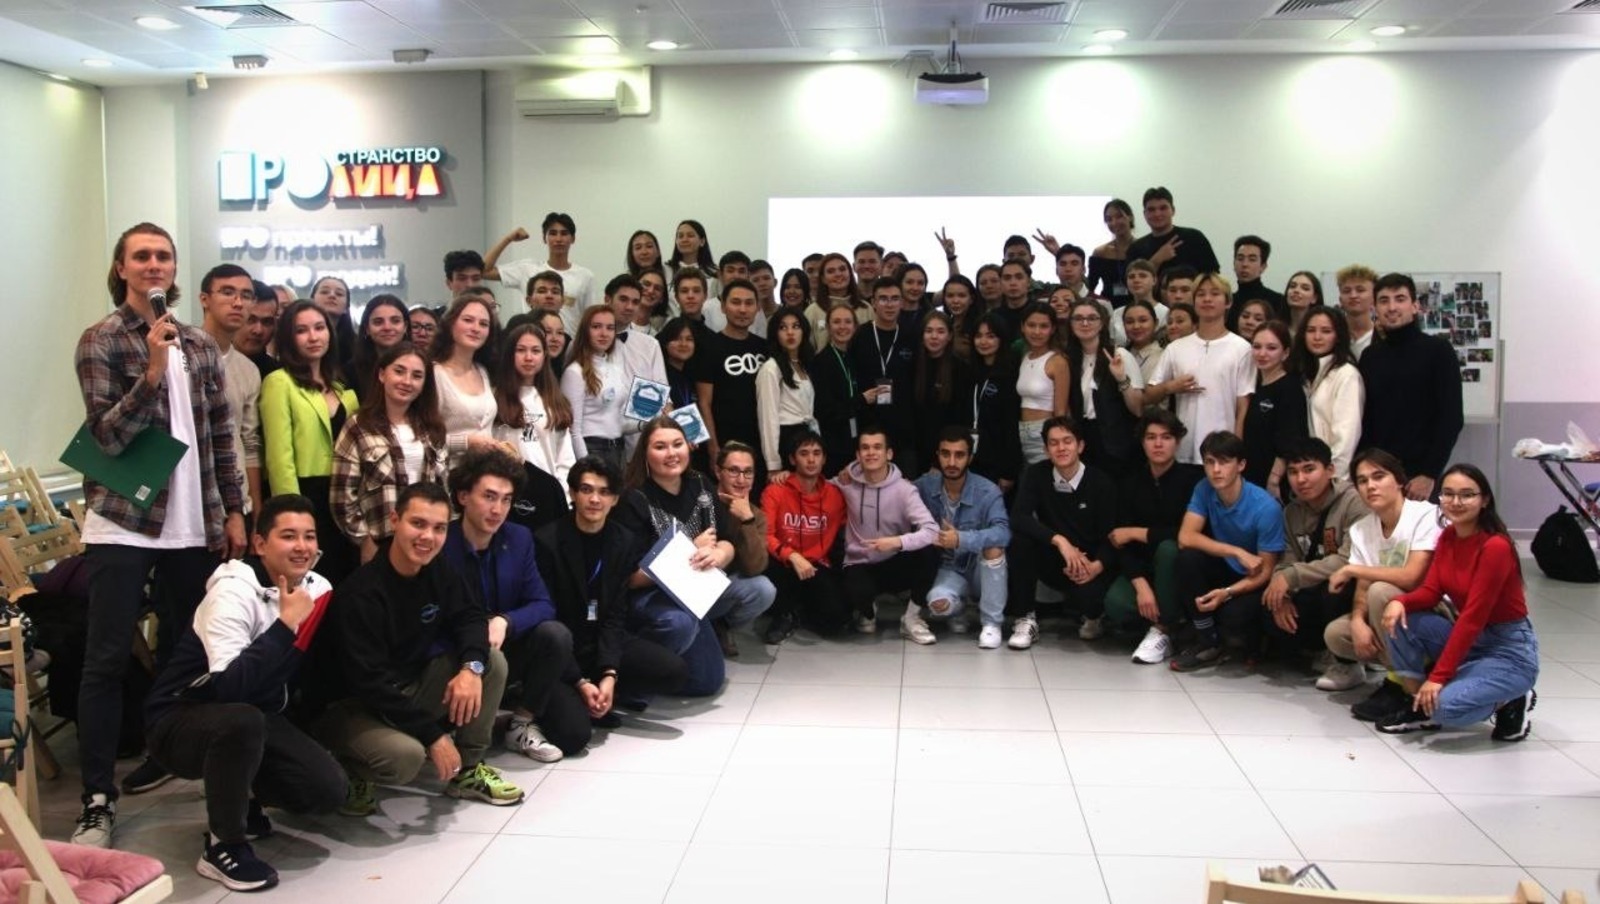 предоставлено ассоциацией студентов и аспирантов Башкортостана в Москве и Санкт-Петербурге.